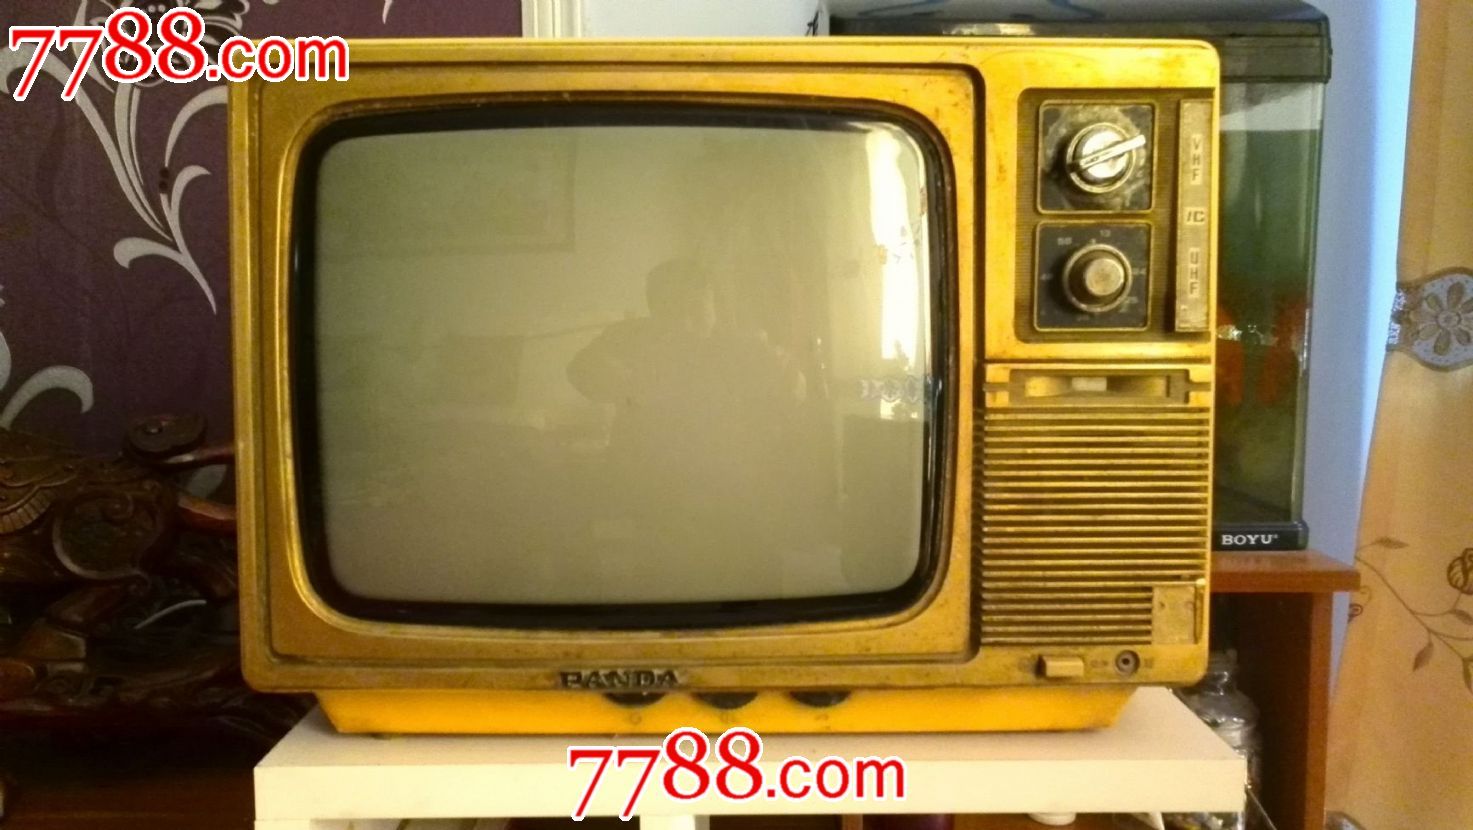 熊猫牌DB35H1-Q黑白电视机二号机_电视机_金